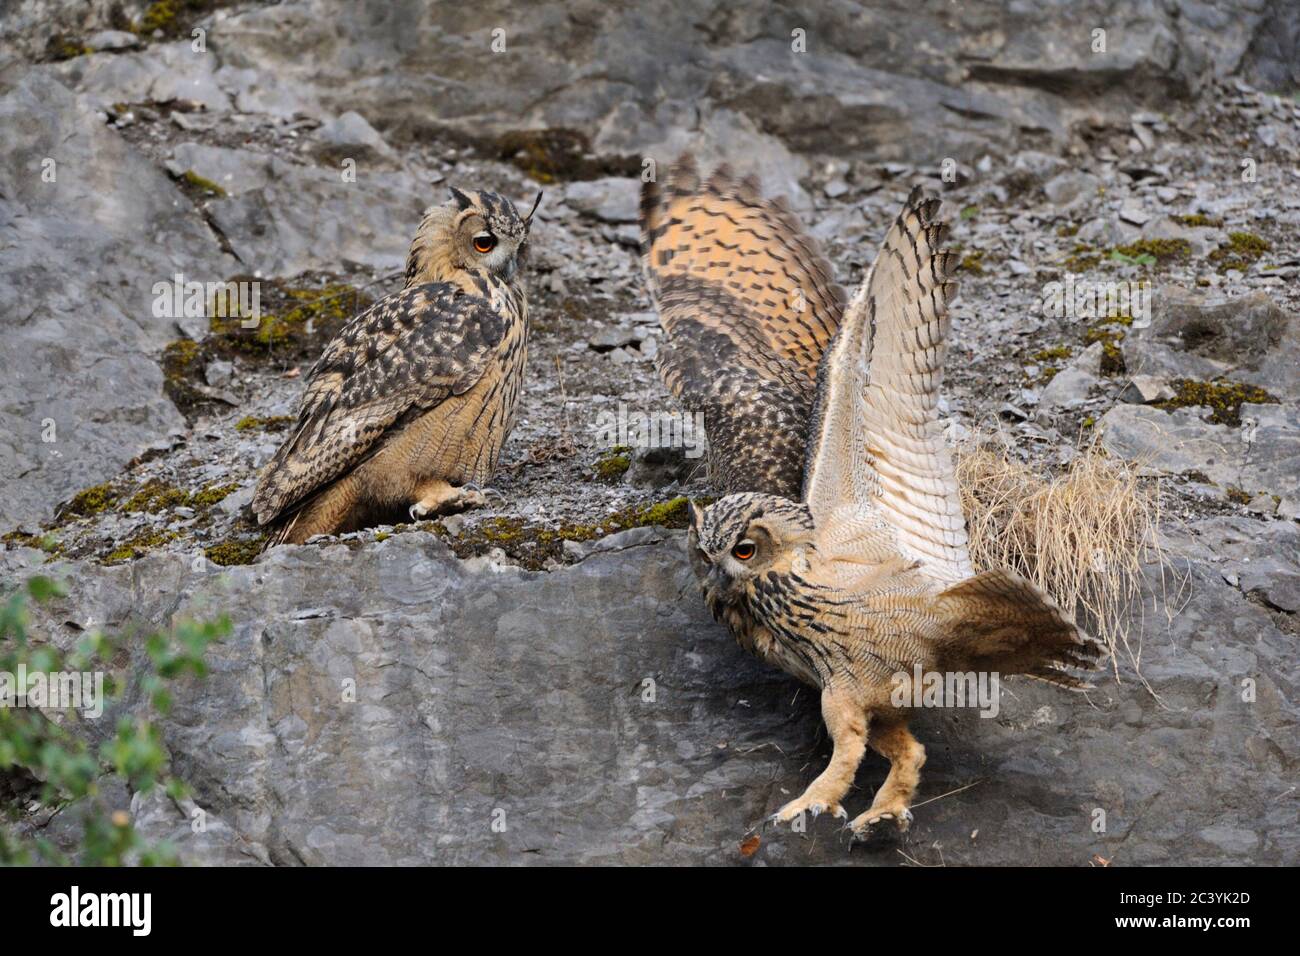 Búhos de Águila Eurasia ( Bubo bubo ), encaramado en una cara de roca empinada, jugando, uno se desliza, cayendo, se ve divertido, juguetón joven, la vida silvestre, Europa. Foto de stock